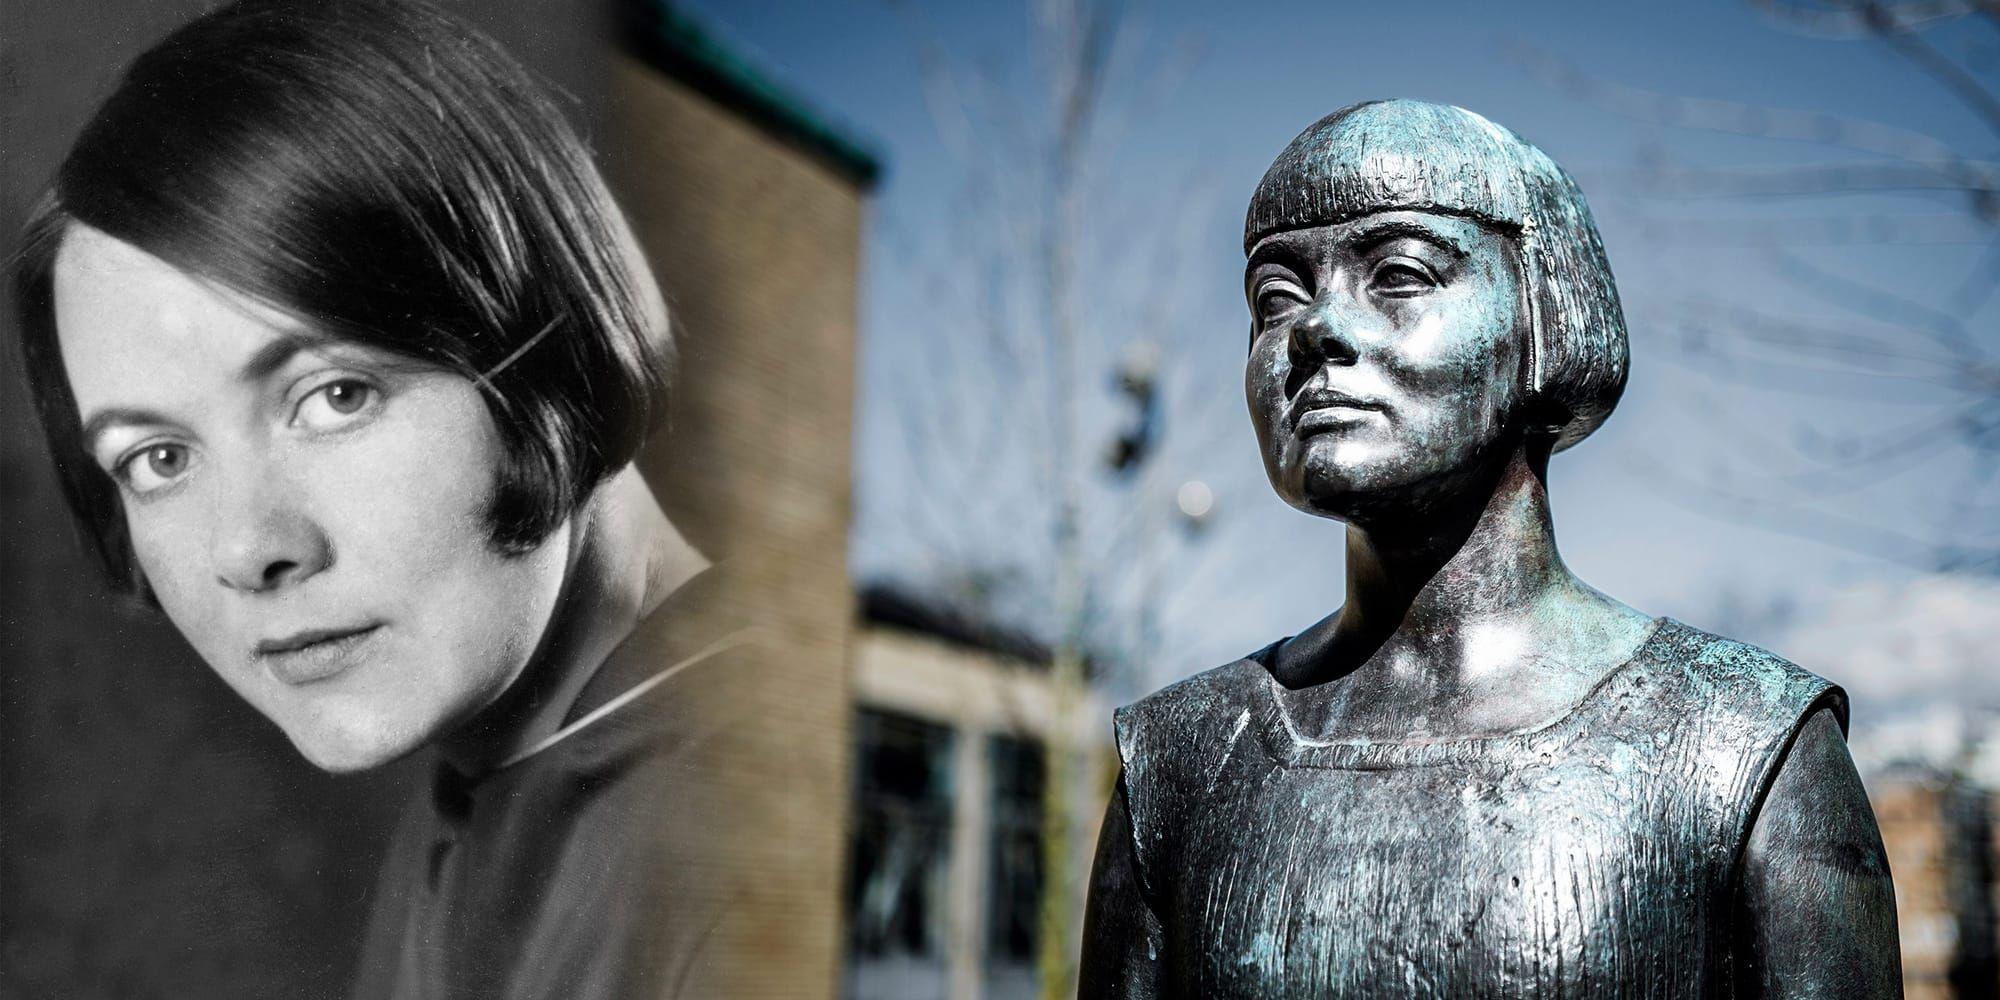 I rörelse. Den mätta dagen, den är aldrig störst. Den bästa dagen är en dag av törst. Så inleds en av Karin Boyes mest om-tyckta dikter. Till höger syns Karin Boye som porträttskulptur i brons utanför stadsbiblioteket i Göteborg av konstnären Peter Linde.